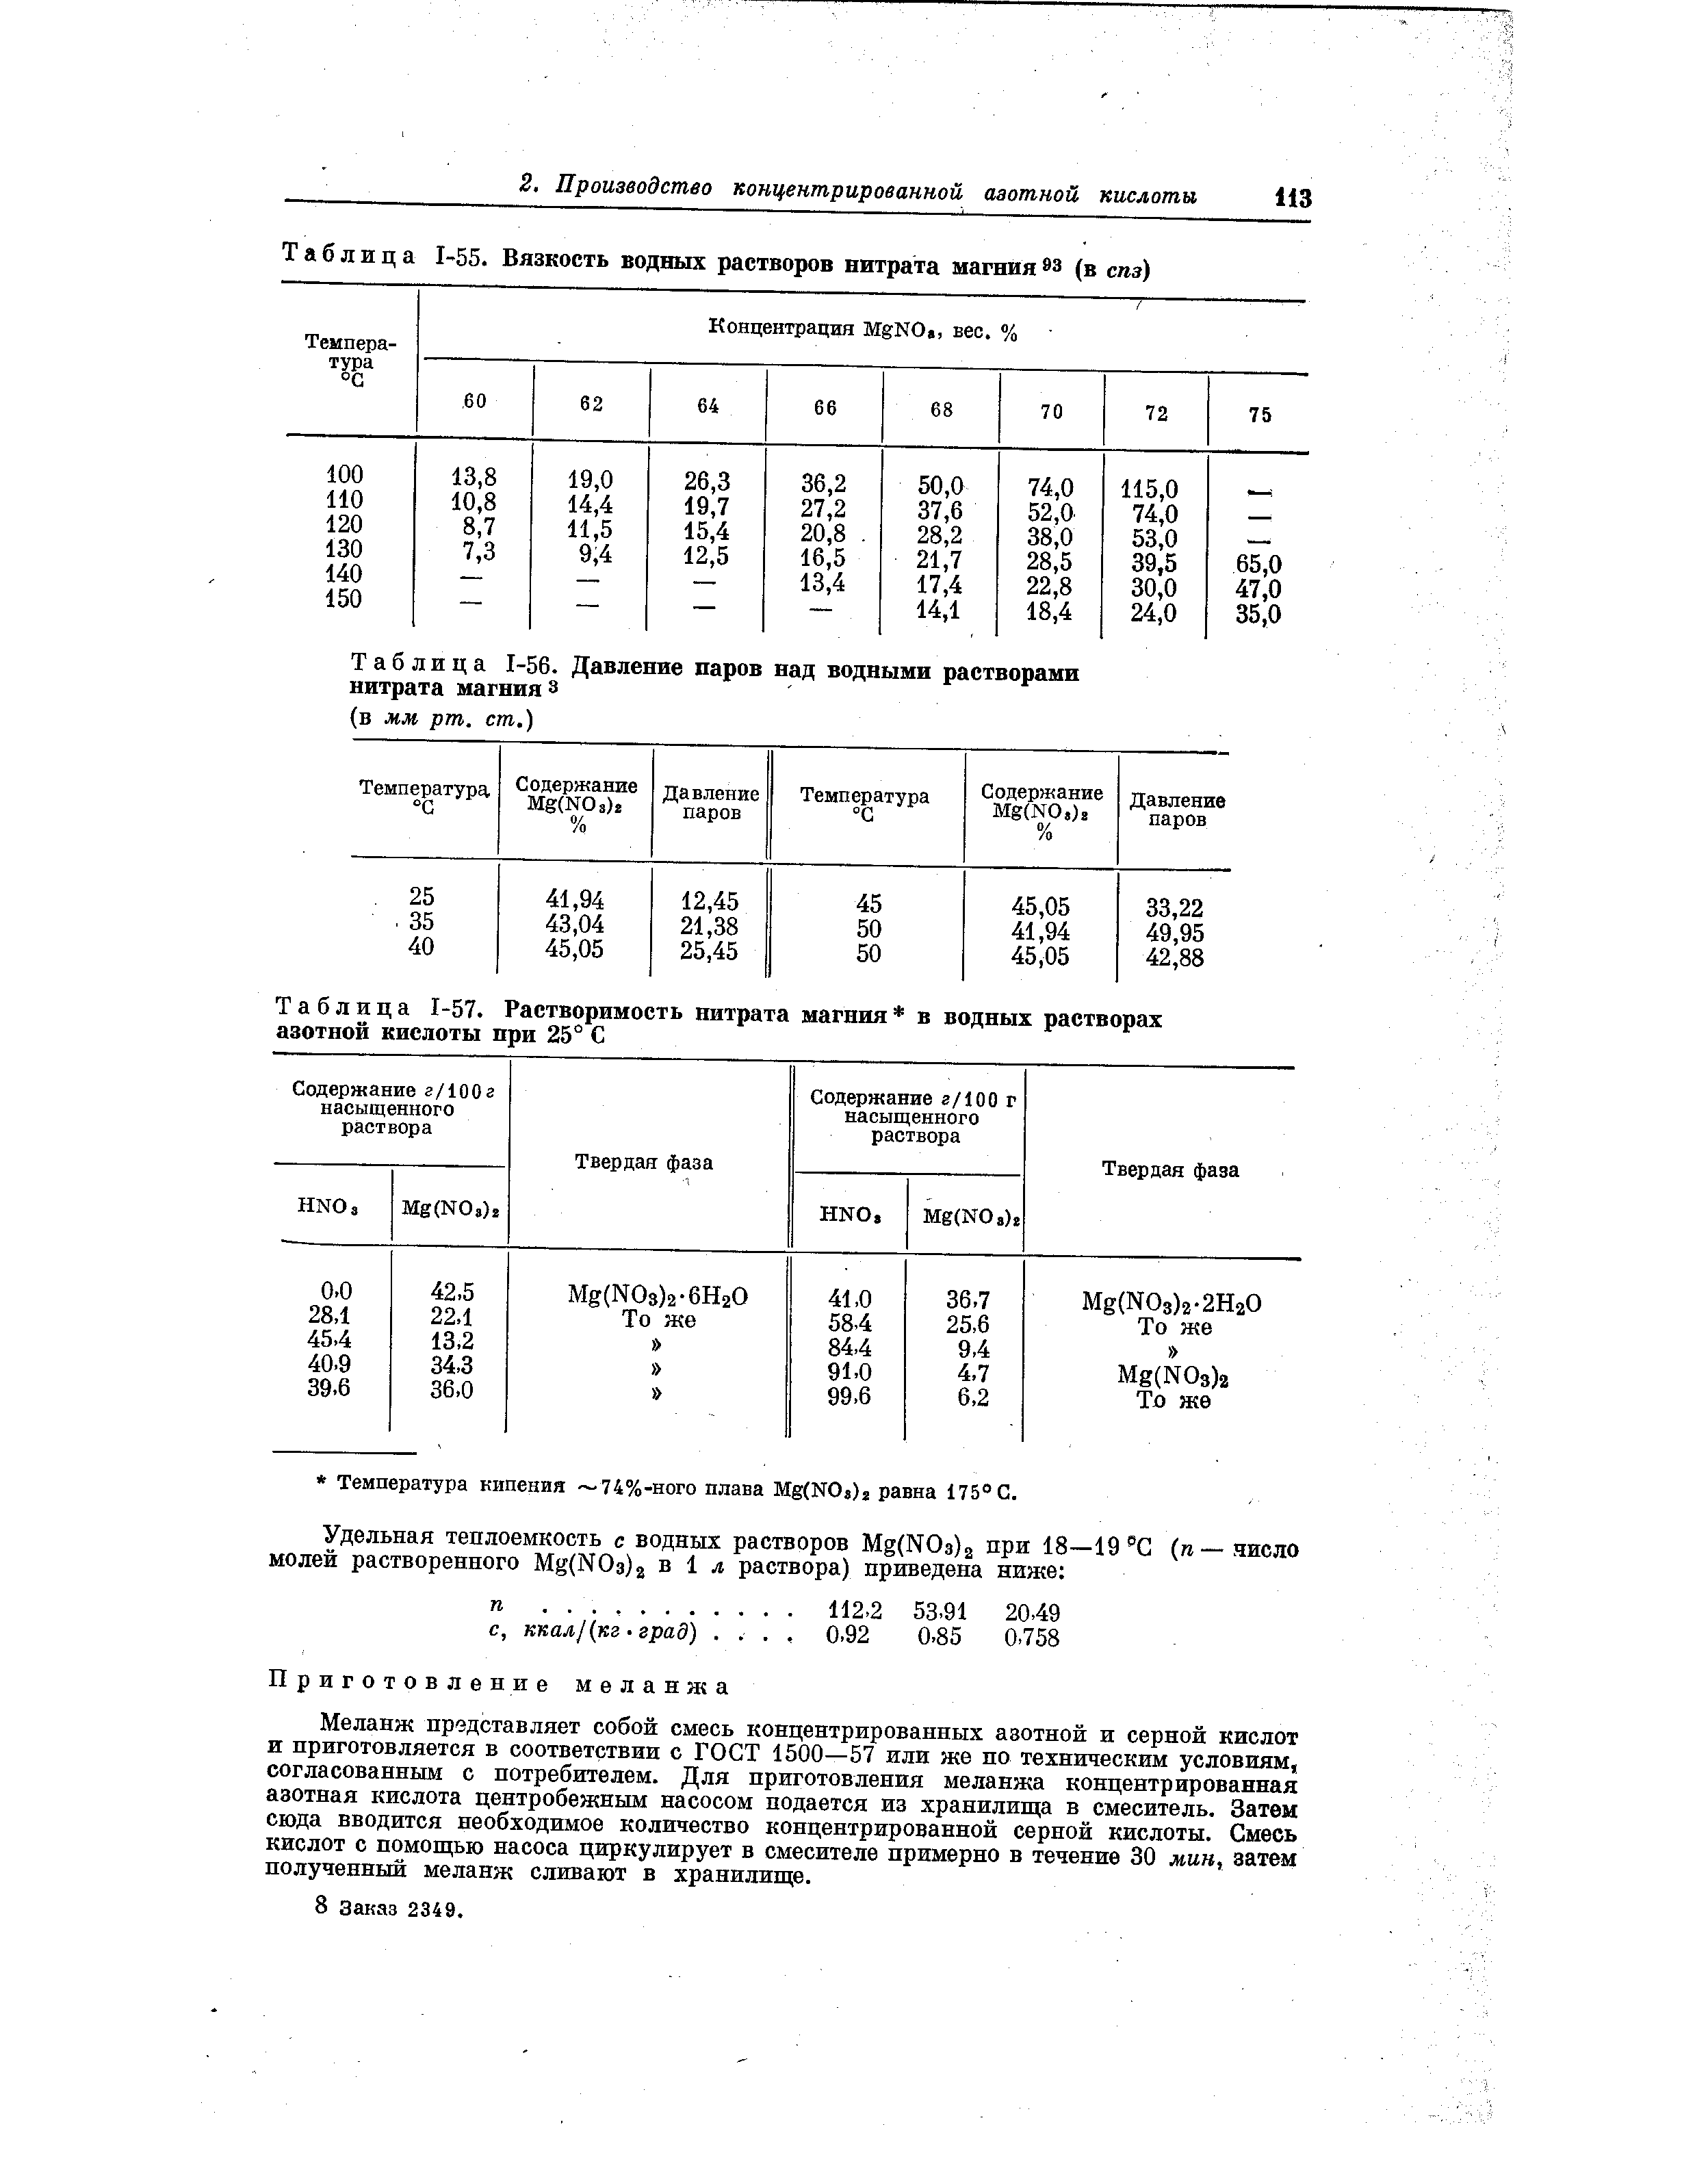 Таблица 1-55. Вязкость водных растворов нитрата магния 9з (в спз)
